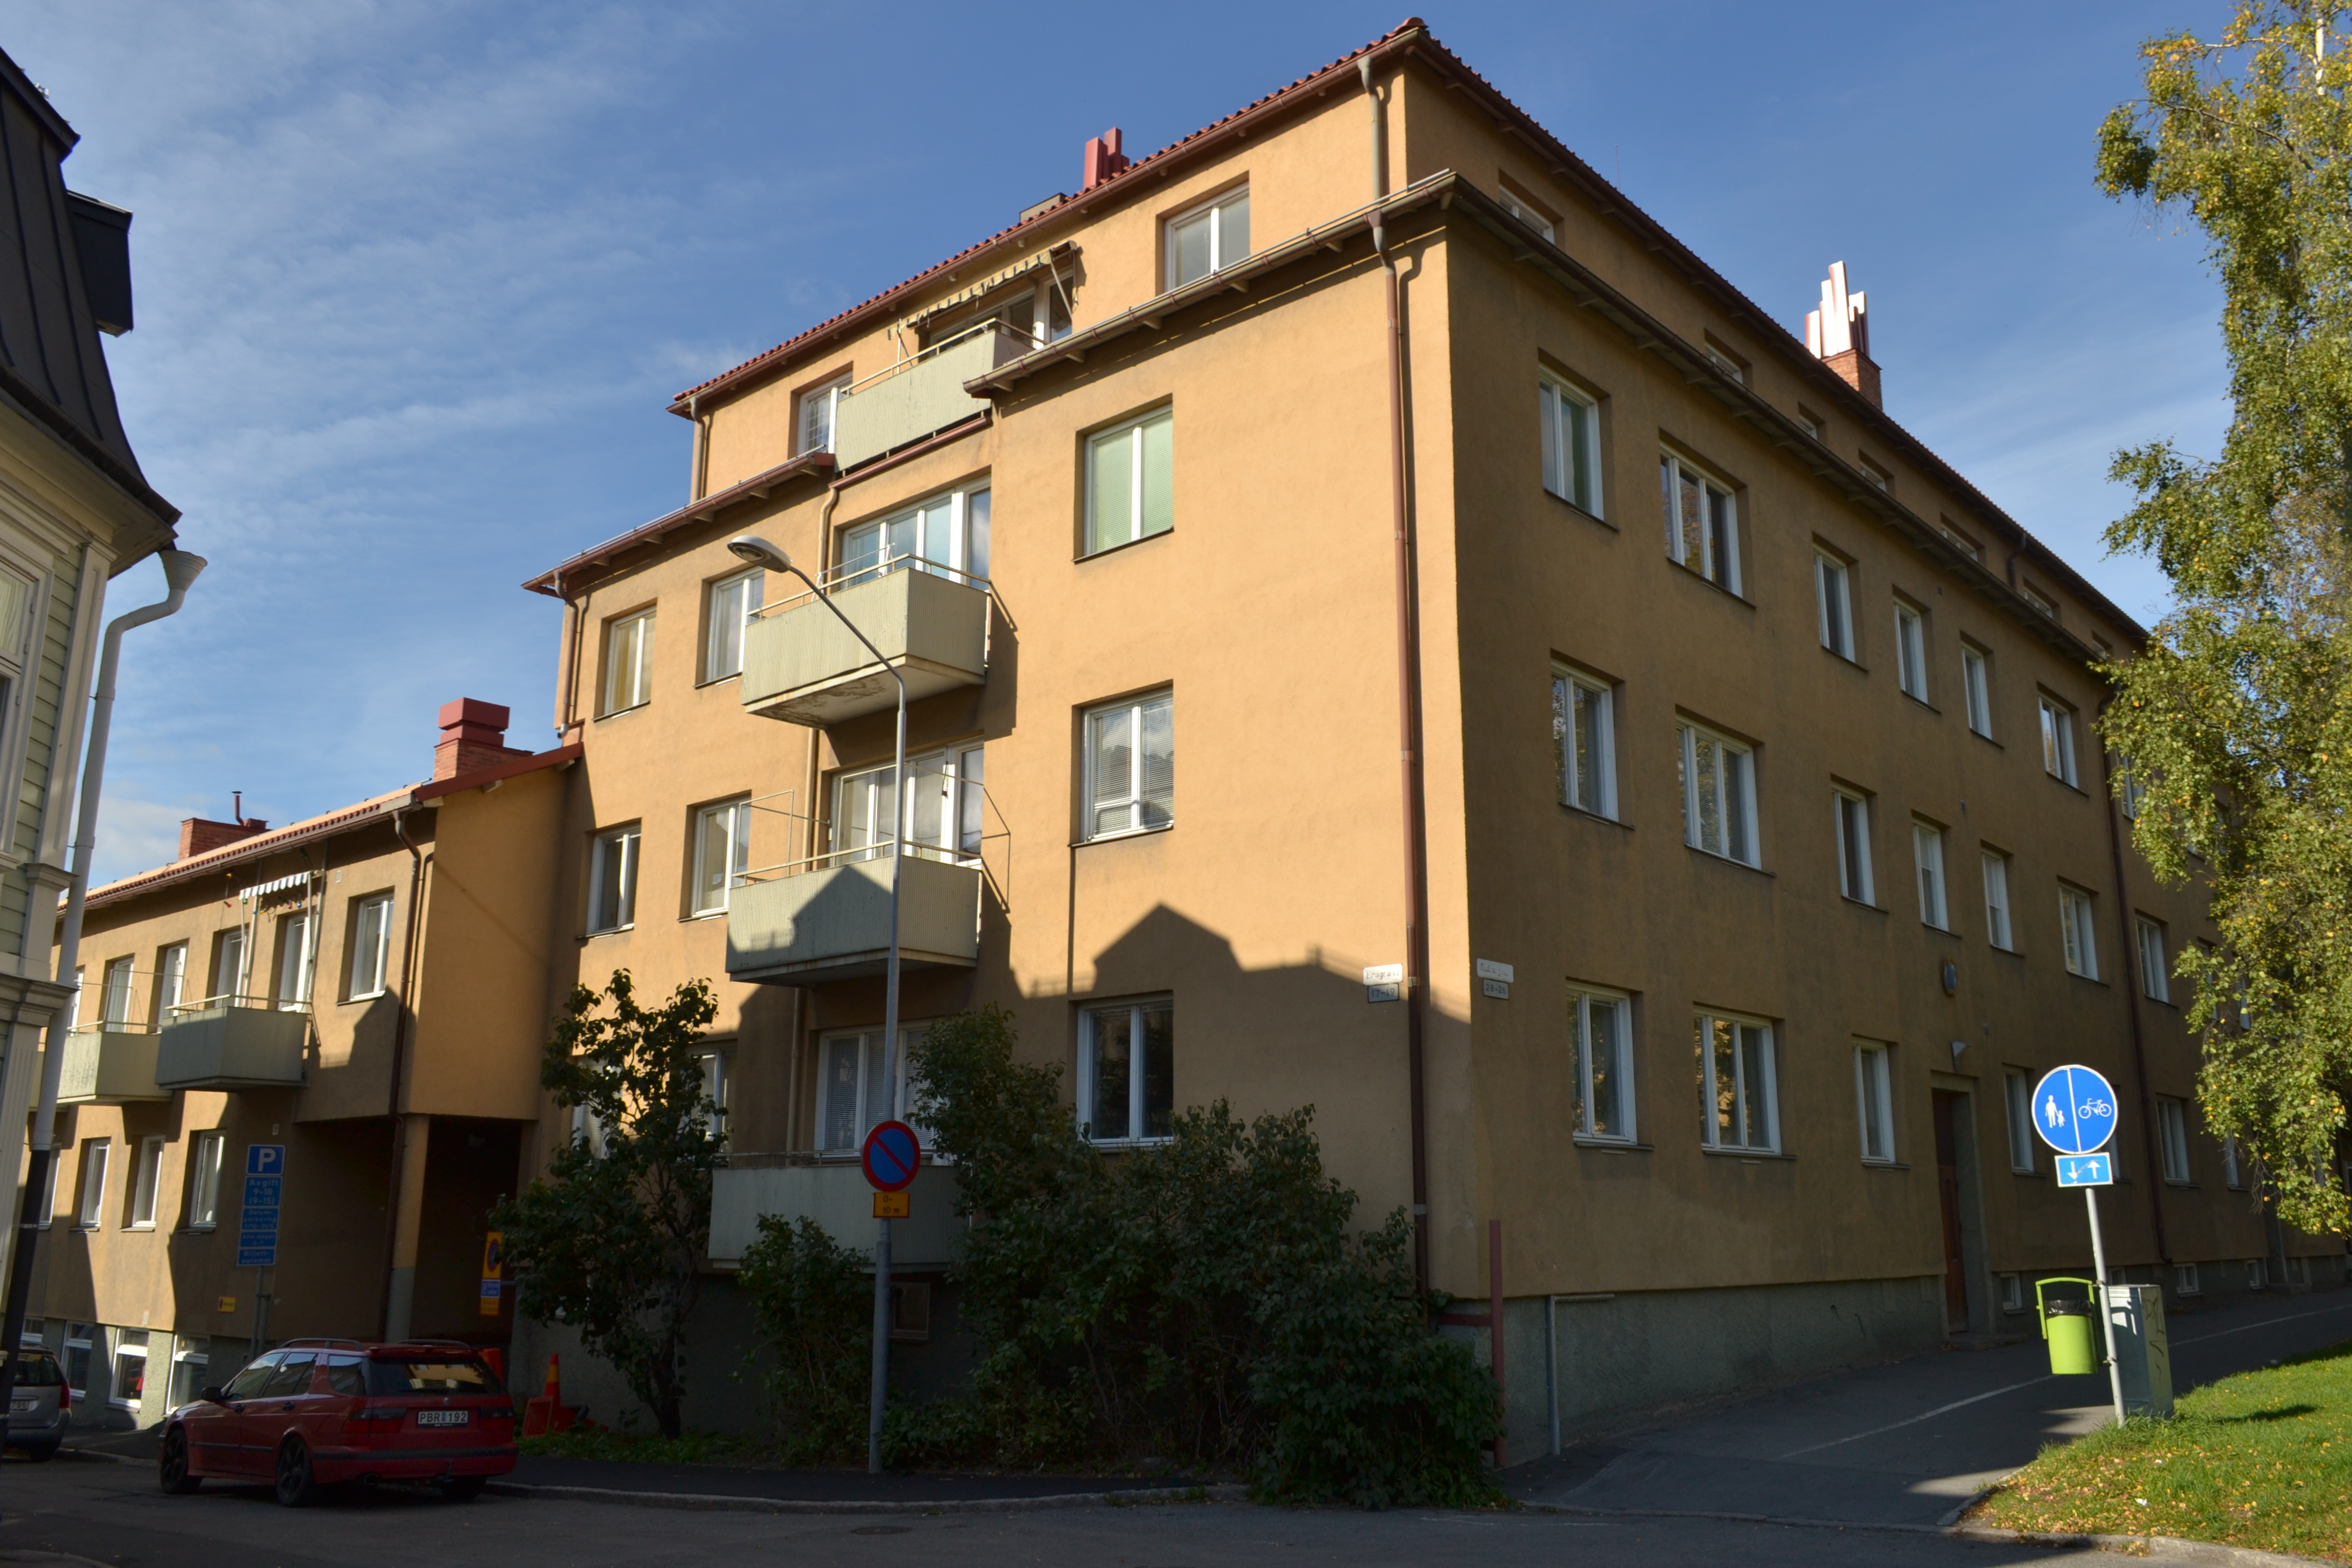 Bostadshus med indragen takvåning, sett från Rådhusgatan.